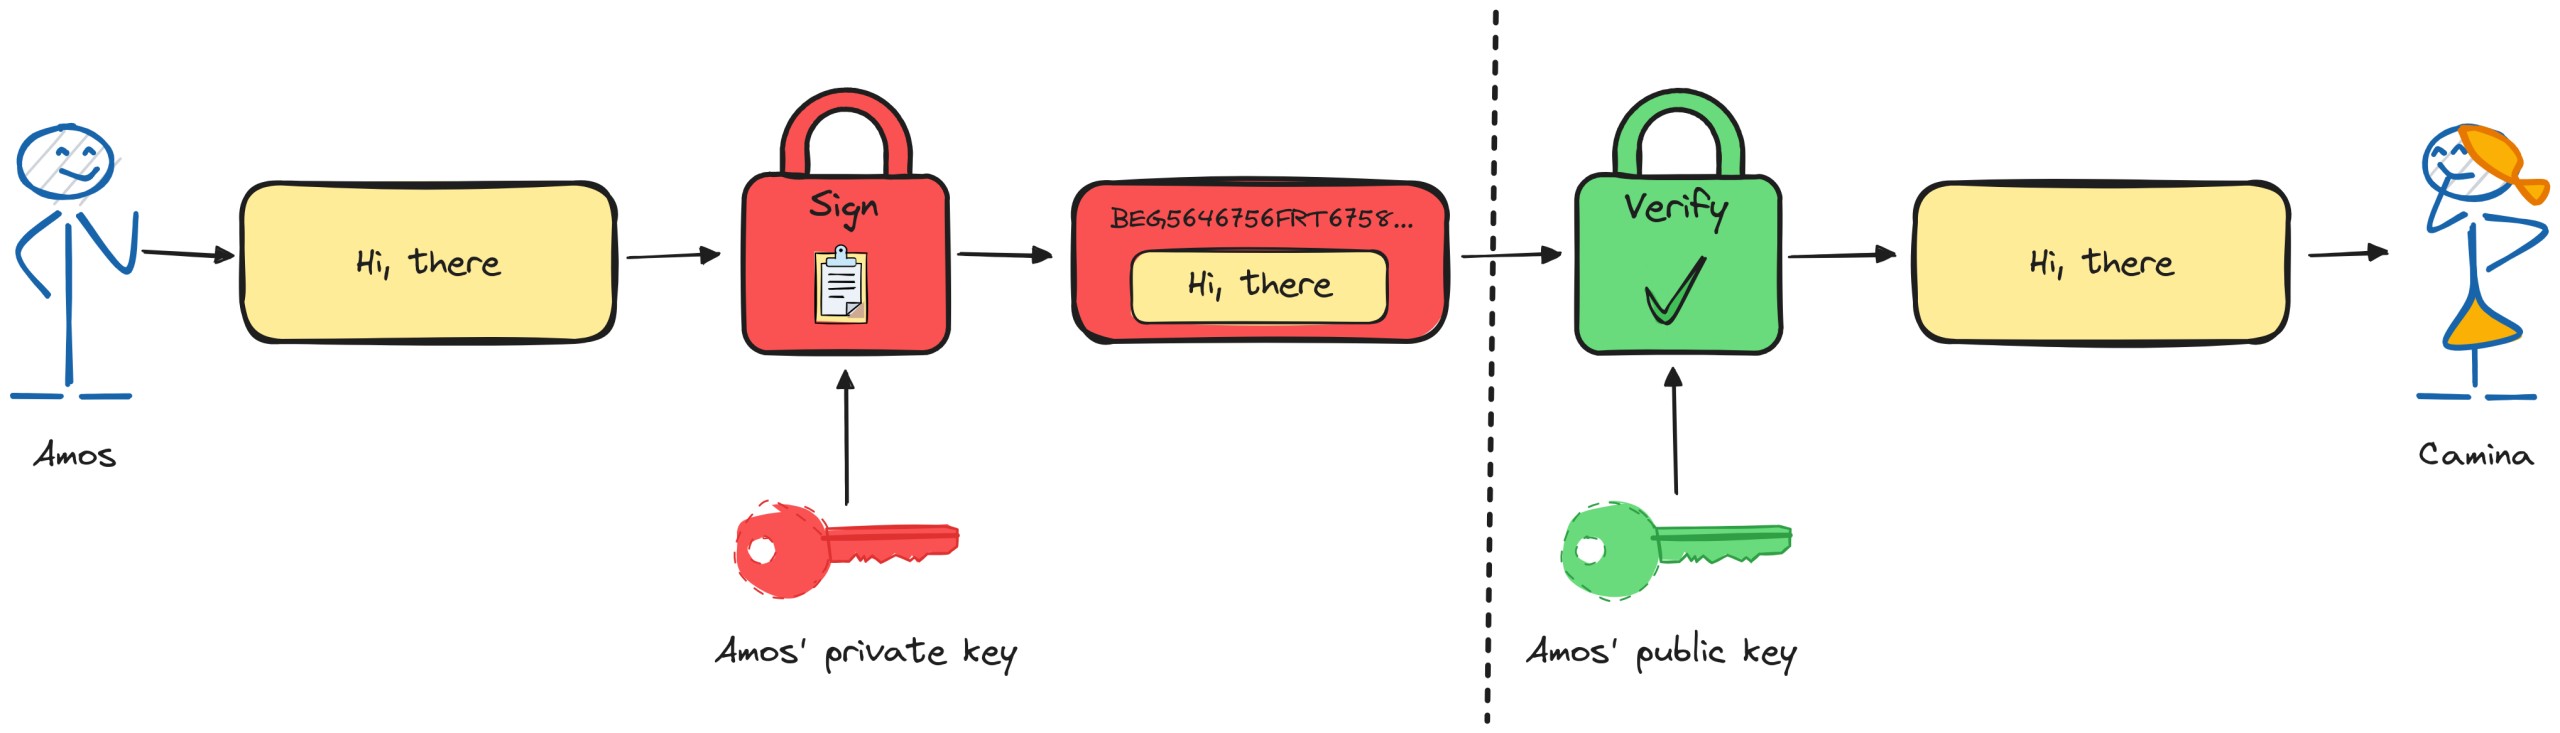 Signature verification using Public-key cryptography